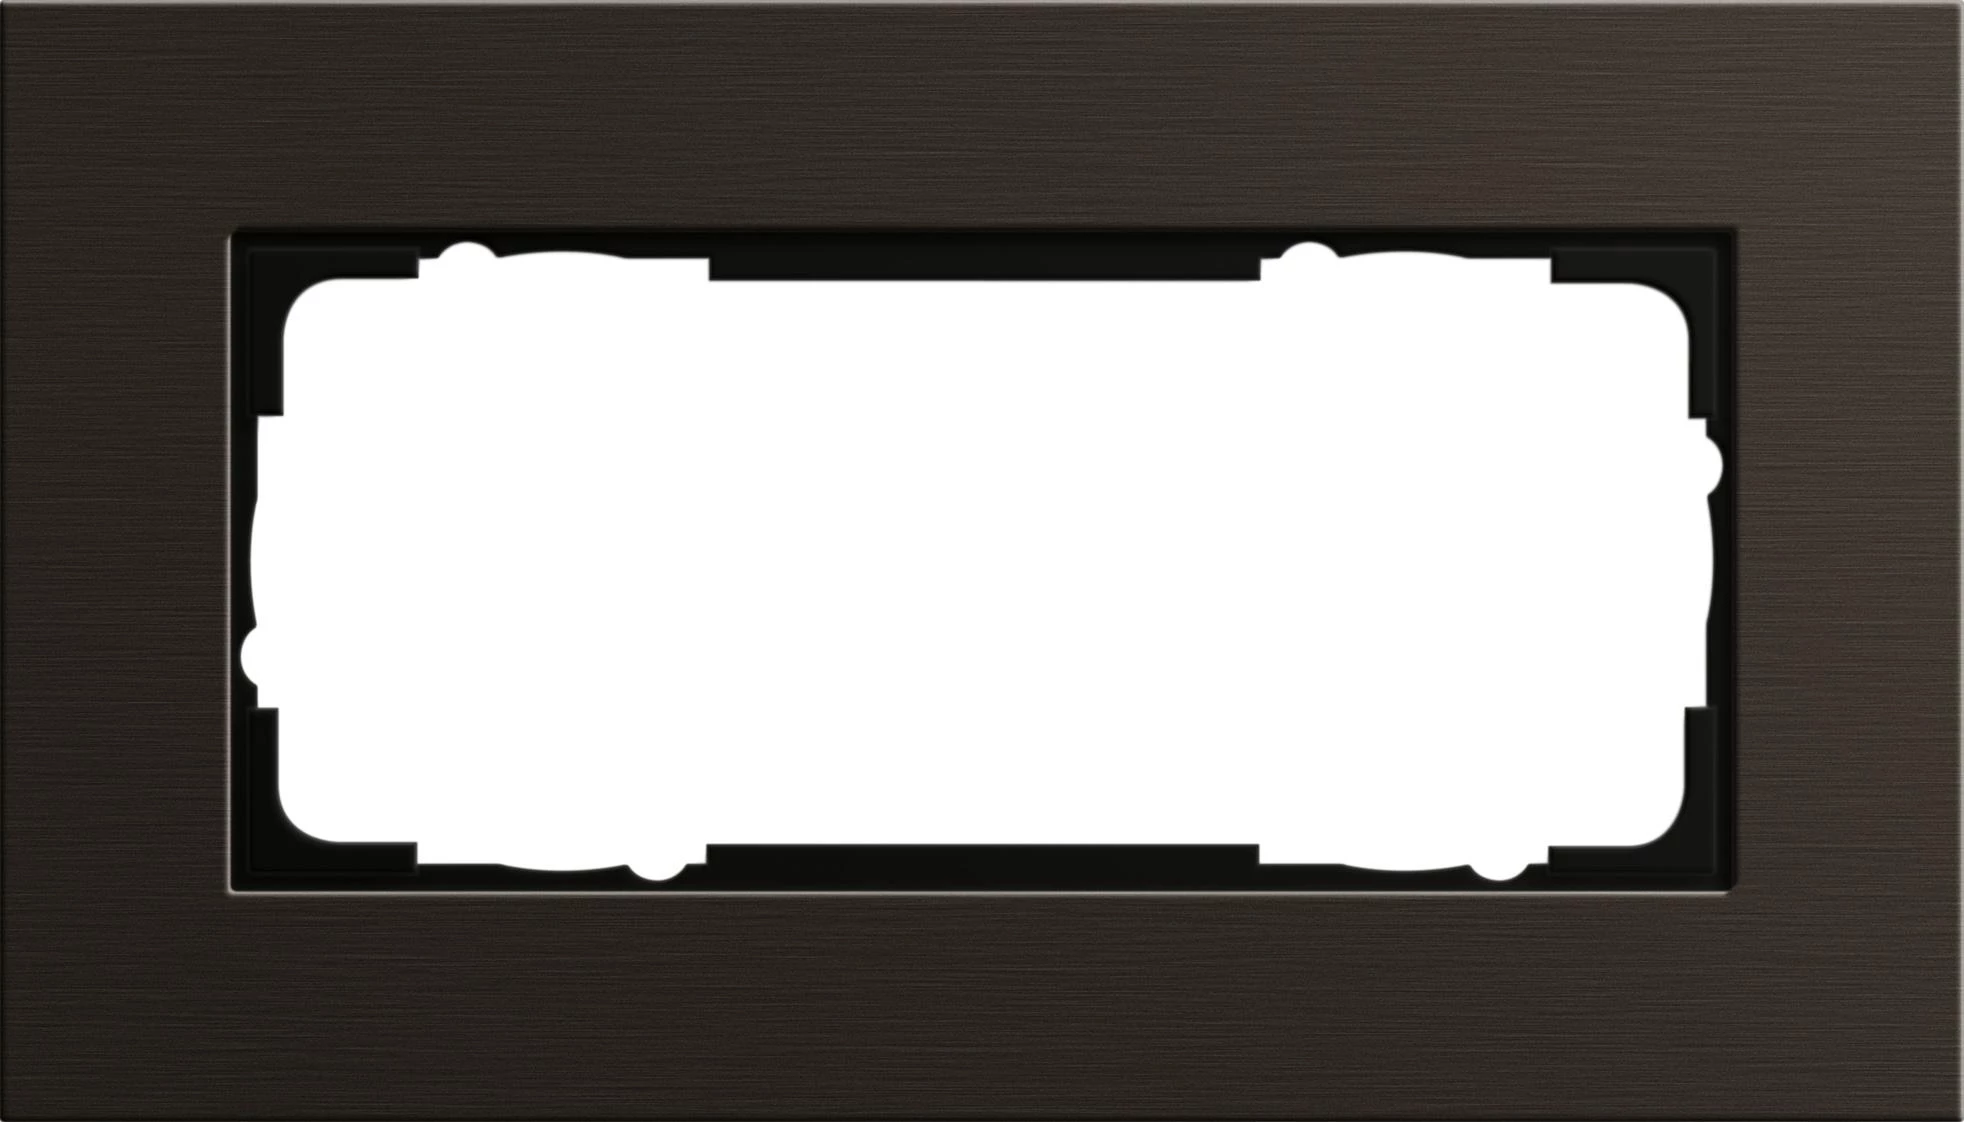  артикул 1002127 название Рамка двойная без перегородки, Алюминий Коричневый (анодированный), серия Esprit